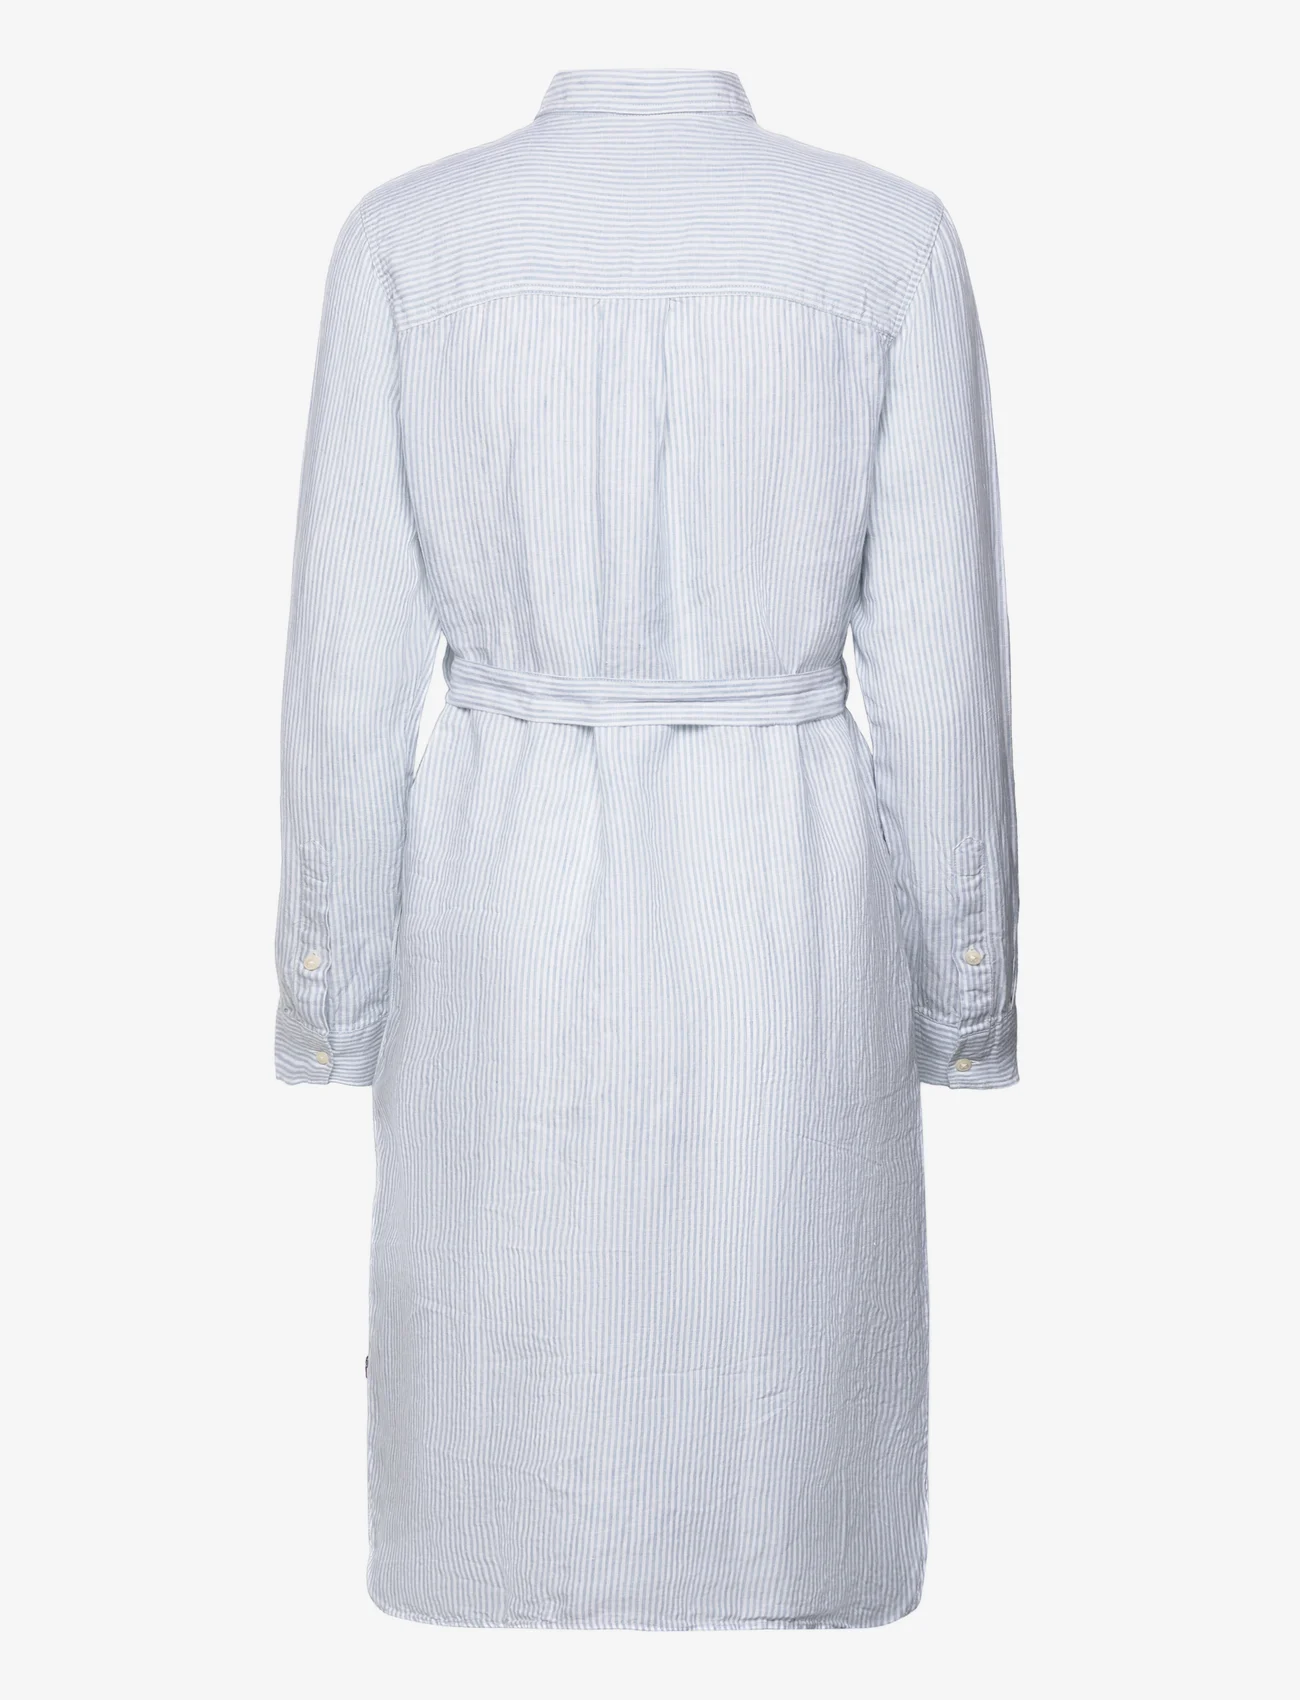 Lexington Clothing - Isa Linen Shirt Dress - sommarklänningar - lt blue/white stripe - 1